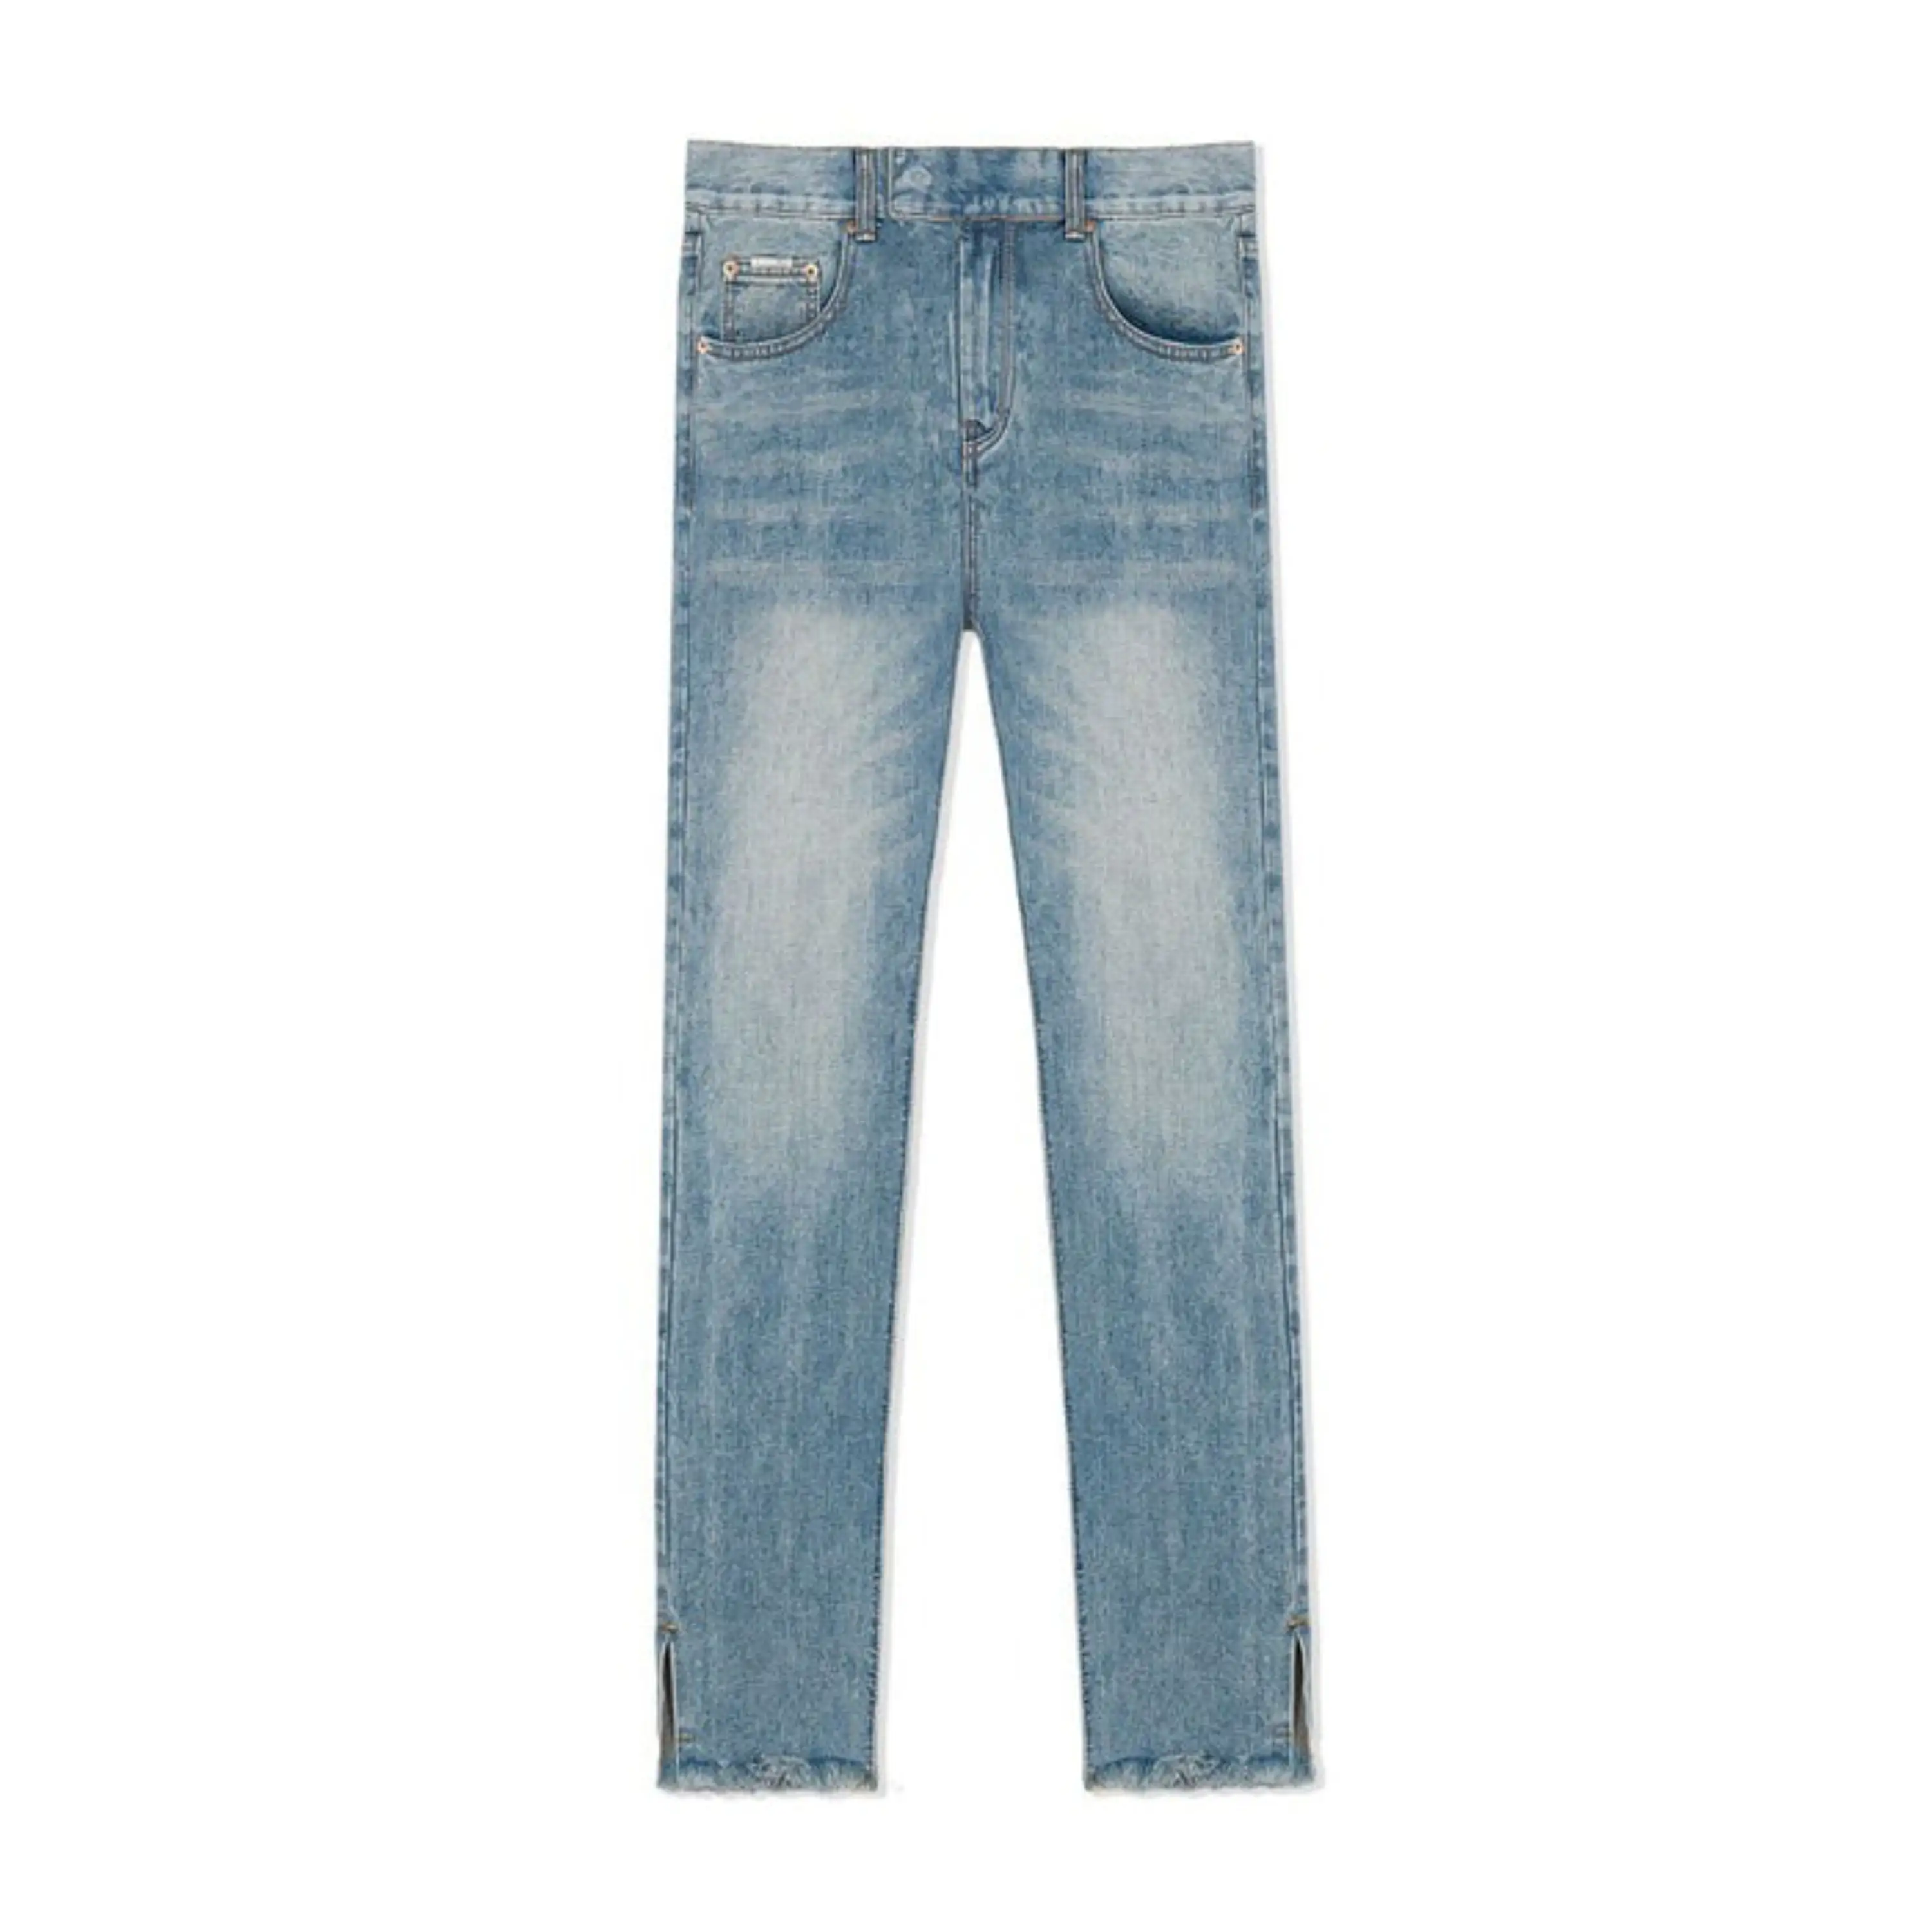 Новые мужские джинсы Повседневная одежда лучшее качество джинсы модный дизайн однотонные Узкие рваные джинсы